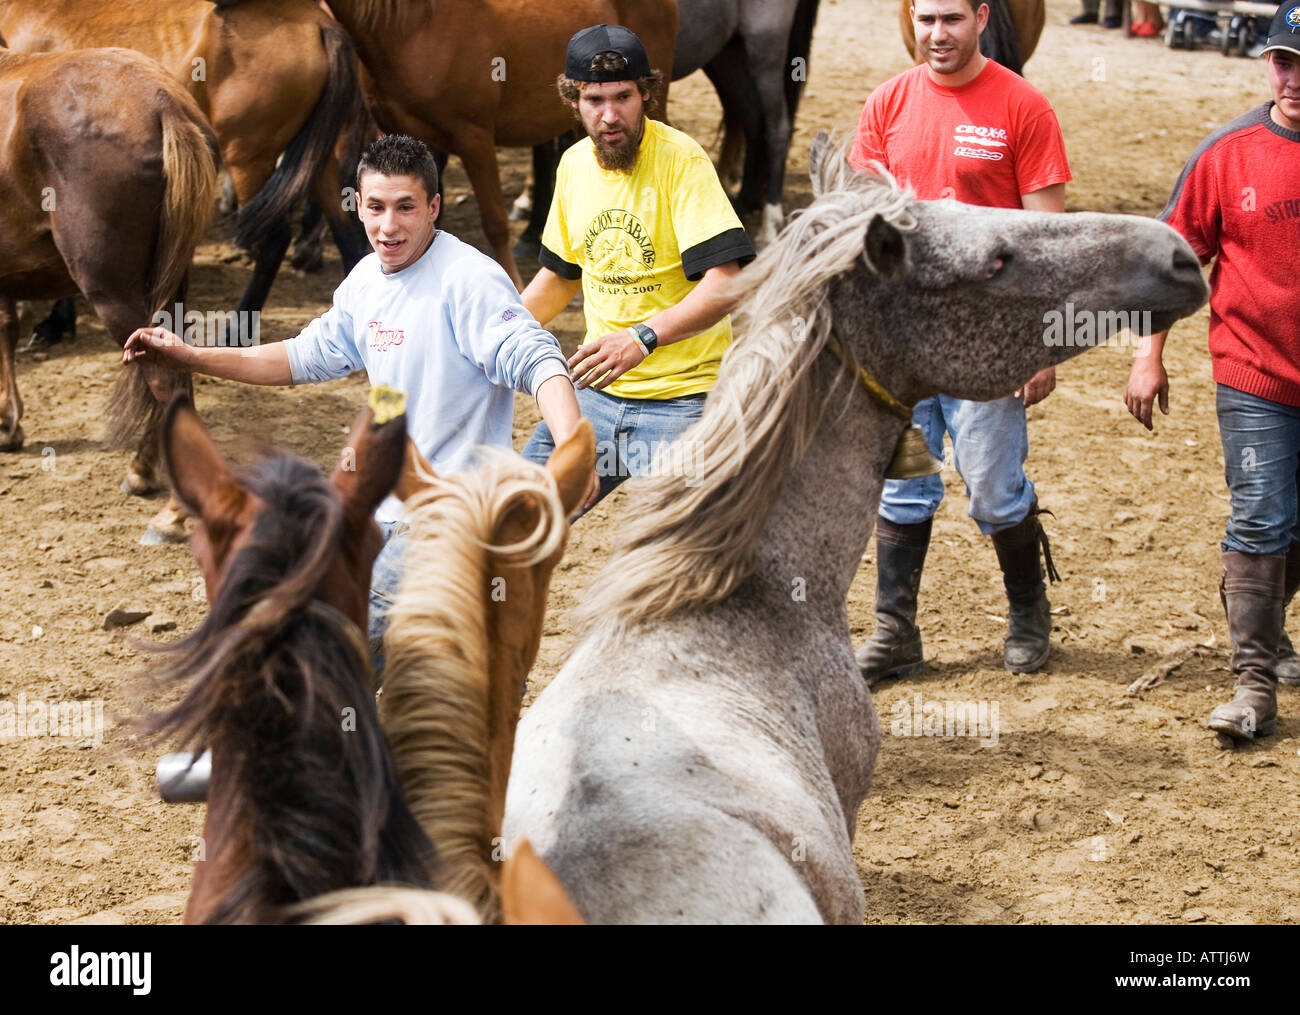 Wild Horses Festival Fiesta Rapa das Besta in Galicia, Domaio, Spain, Europe EU Stock Photo